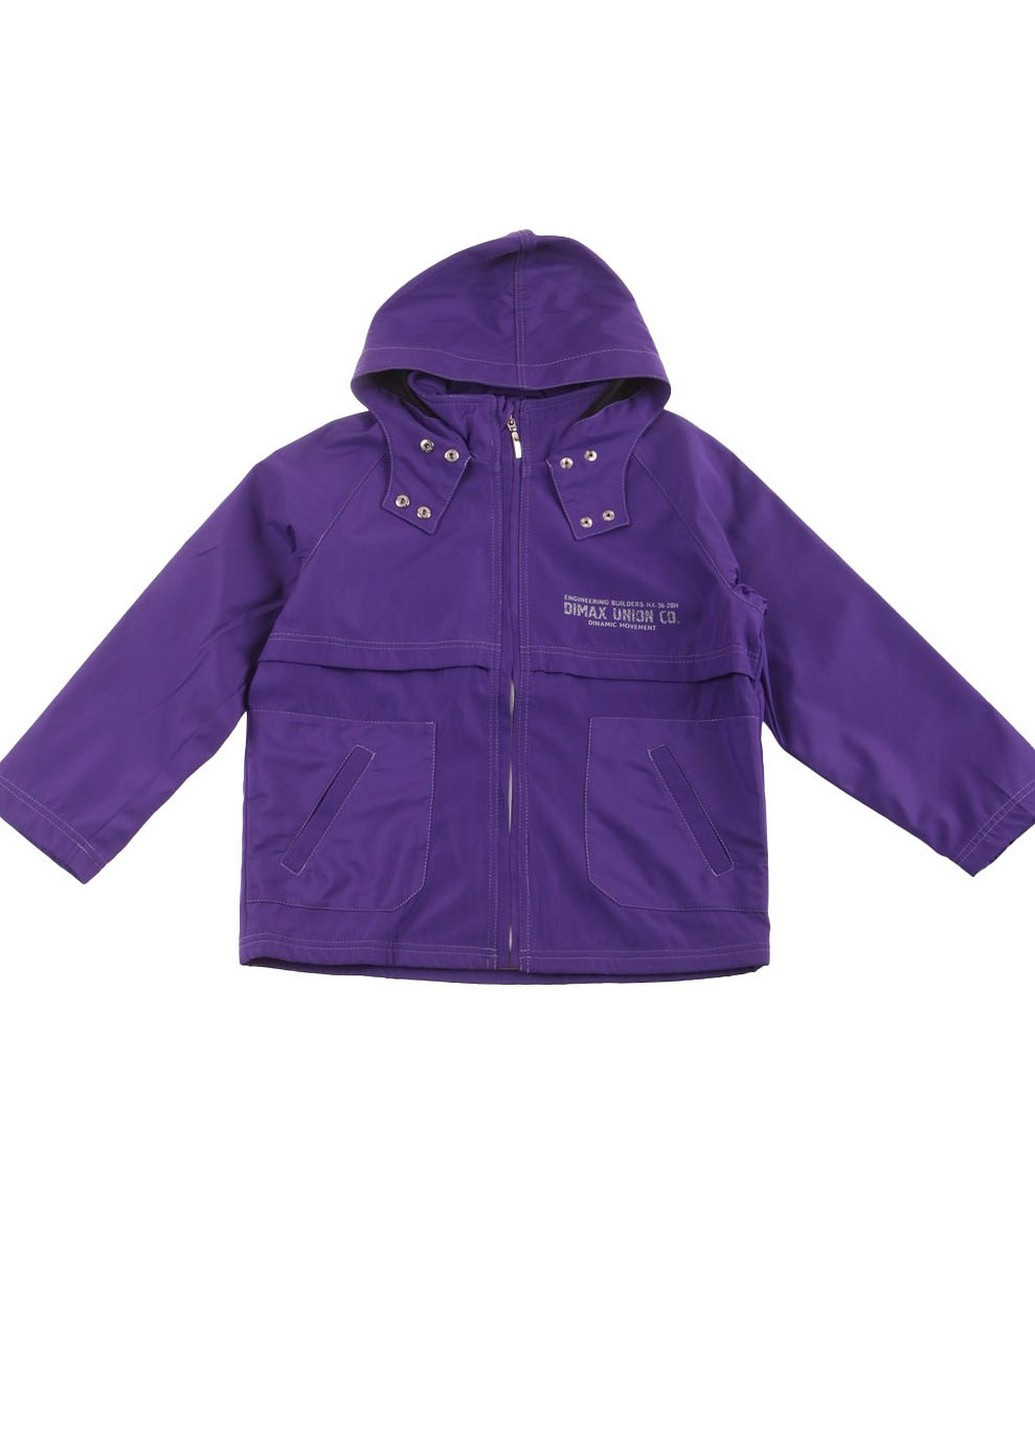 Фиолетовая демисезонная куртка Лилия